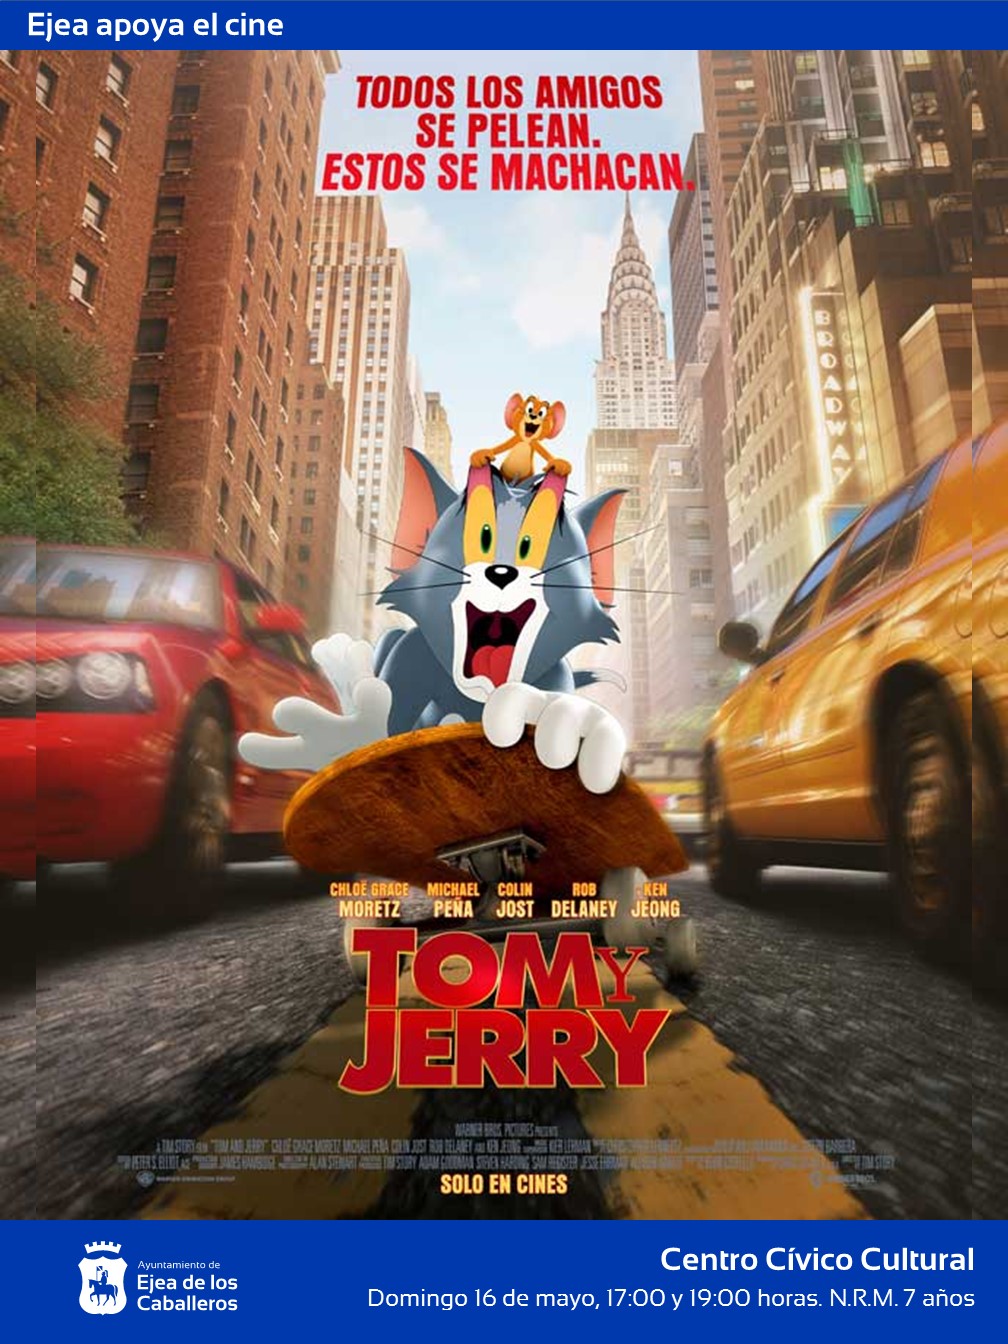 En este momento estás viendo Ejea apoya en cine: Cita con “Tom y Jerry”, nueva versión del gato y el ratón más populares de la historia de la animación